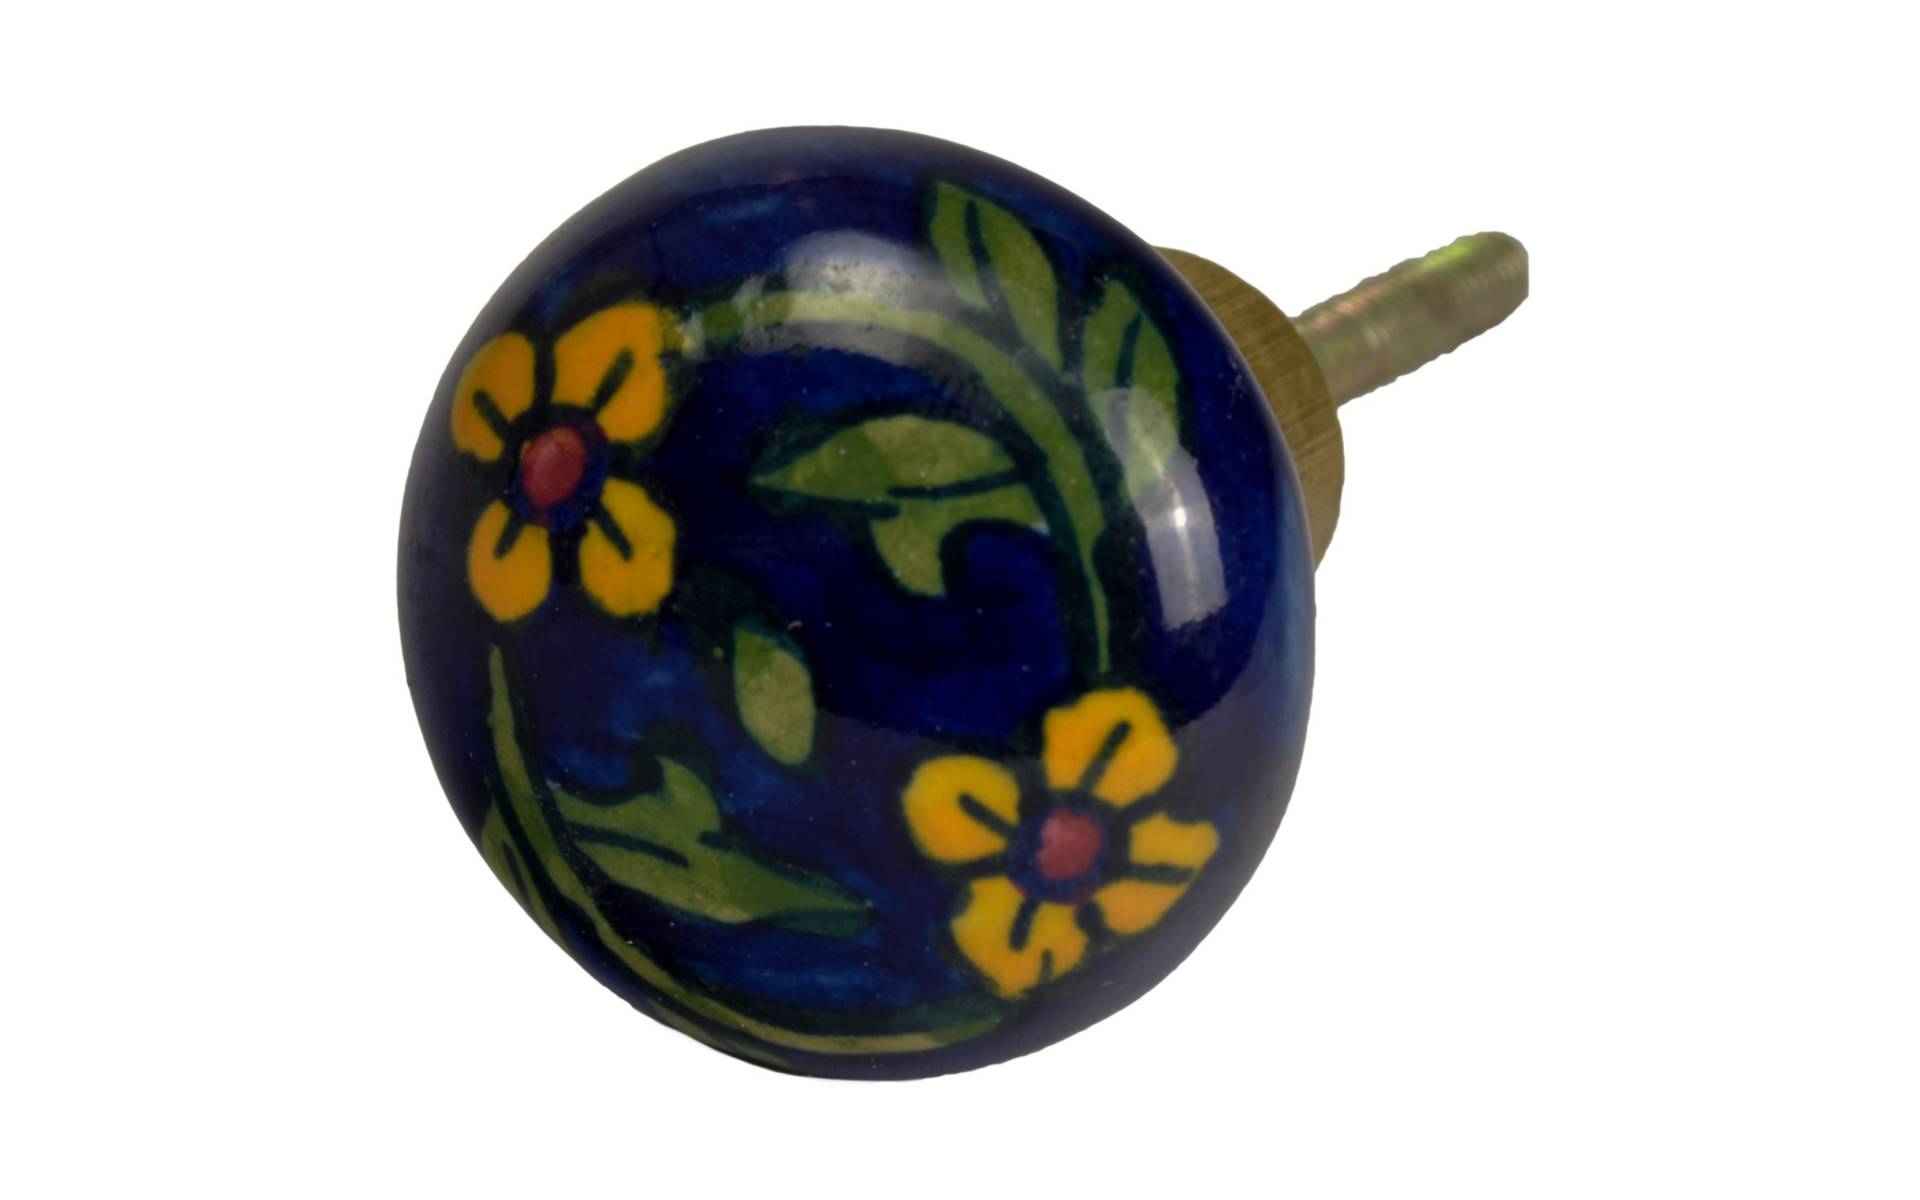 Maľovaná porcelánová úchytka na šuplík, modrá, žlté kvety, priemer 3,7 cm